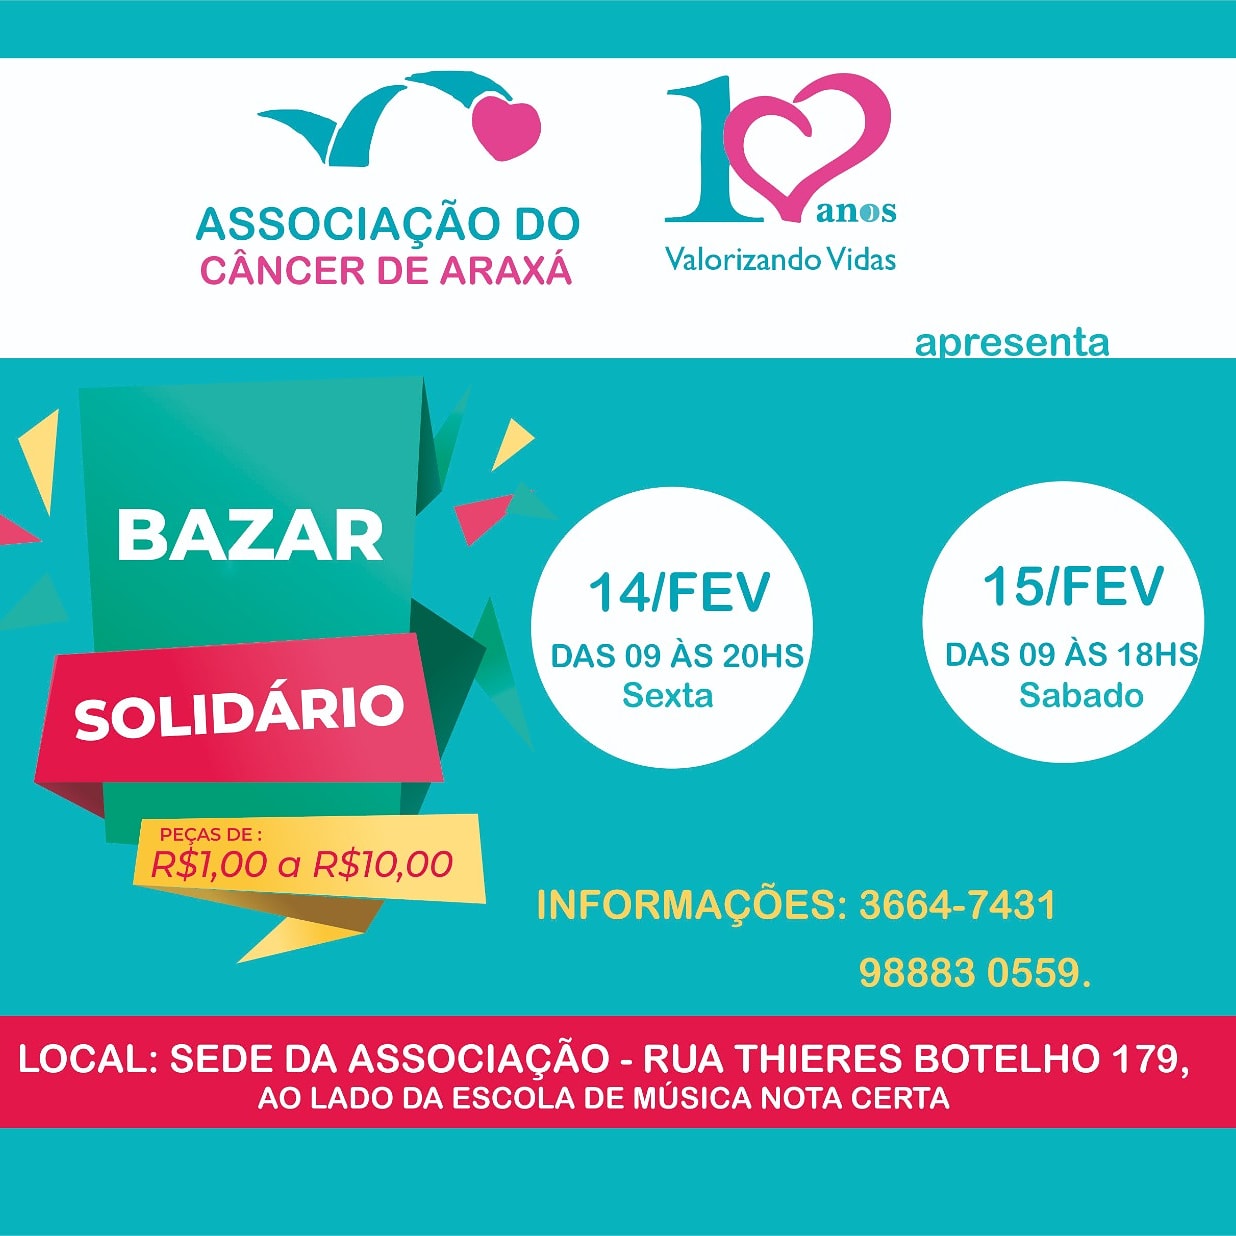 Associação do Câncer de Araxá  realiza bazar solidário nos dias 14 e 15 fevereiro.